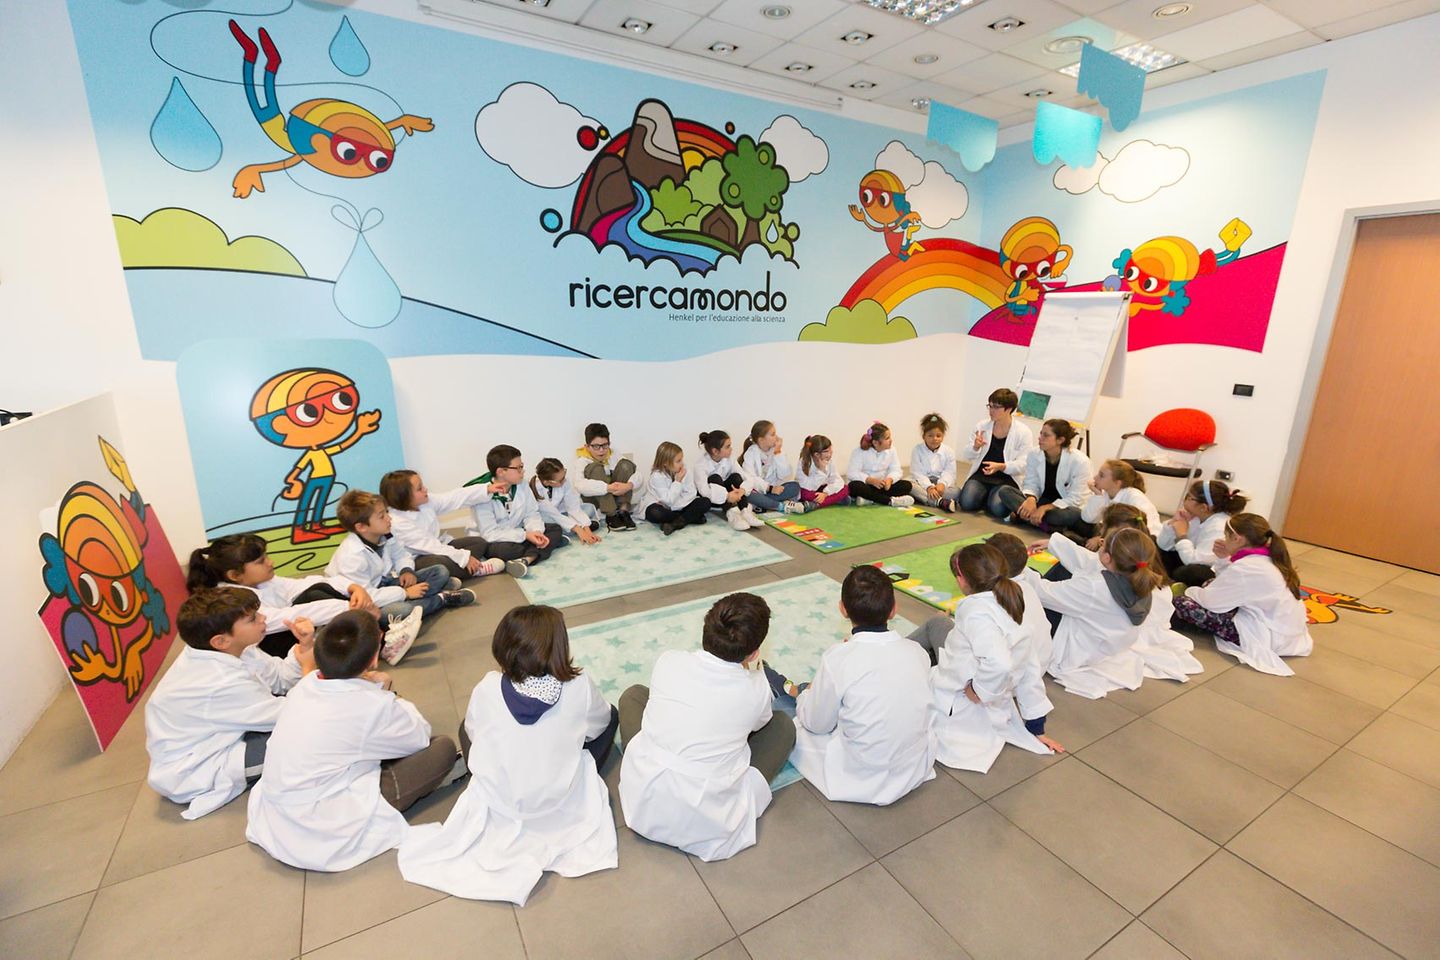 Oltre 2.000 bambini di Milano, Napoli, Padova, Forlì, Lucca e Bergamo hanno già partecipato a ricercamondo